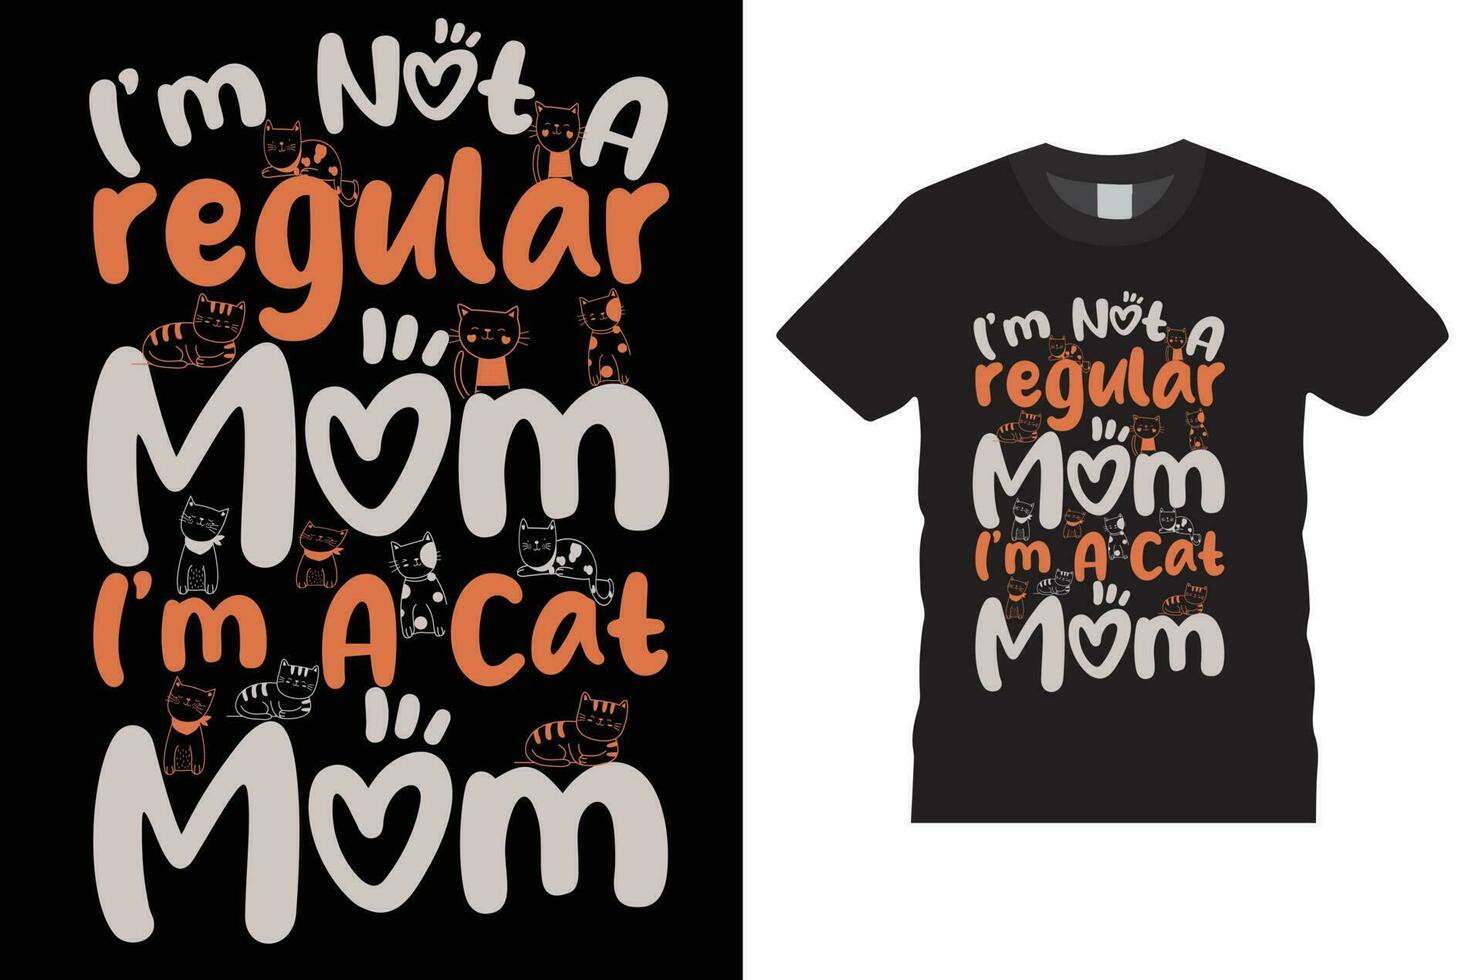 design t-shirt per la festa della mamma vettore